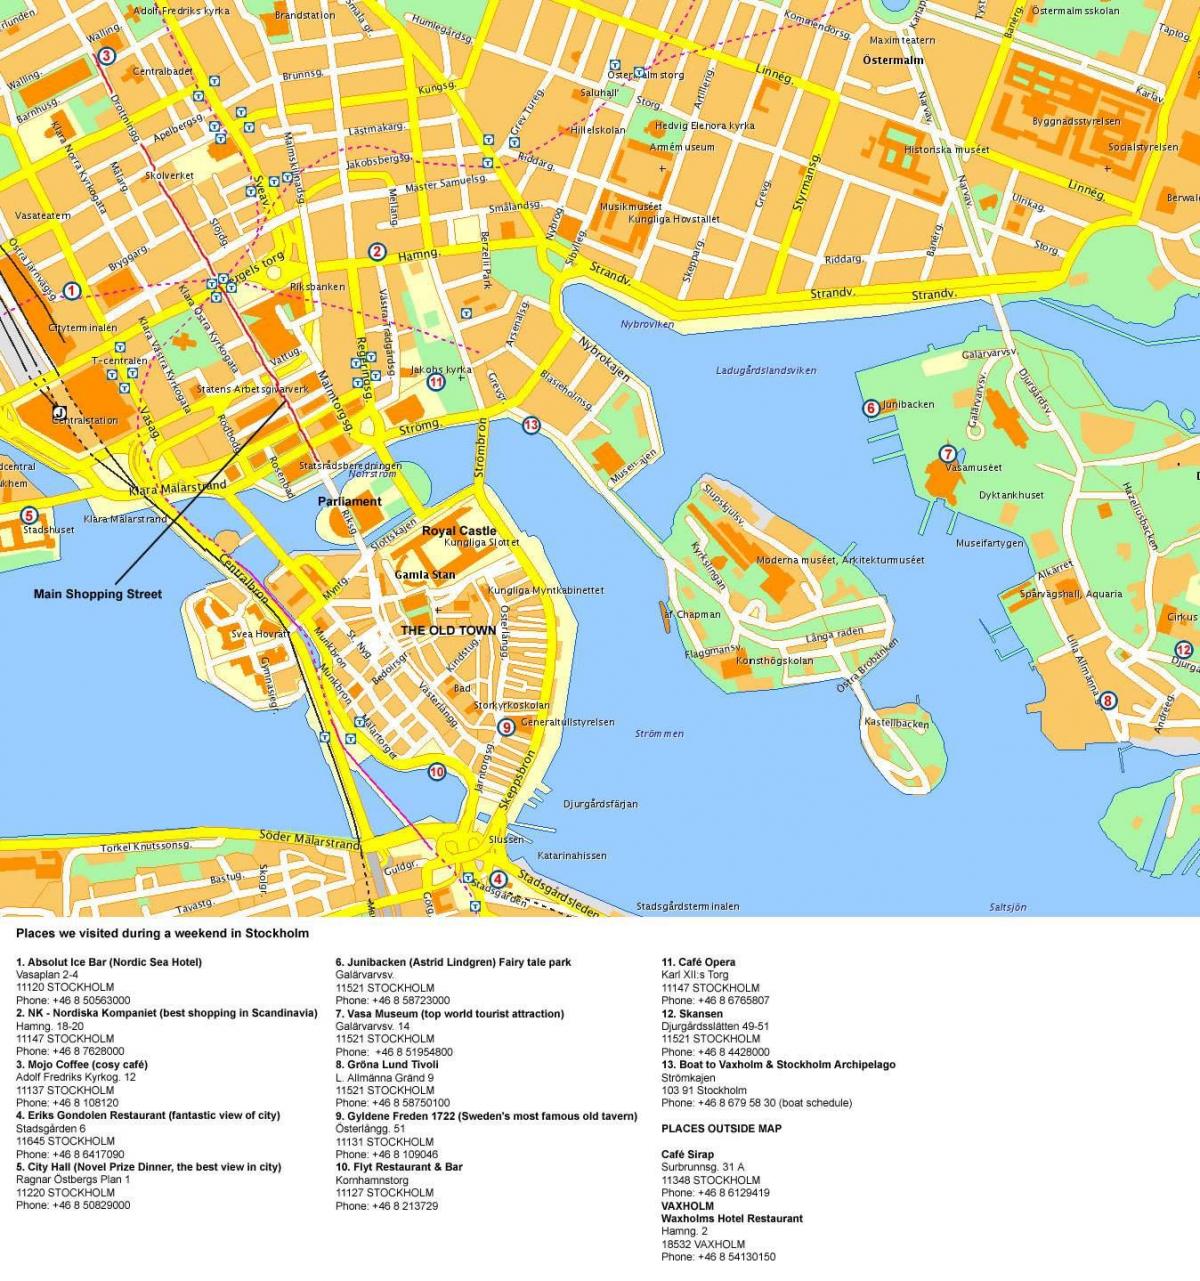 Stockholm-zentro mapa